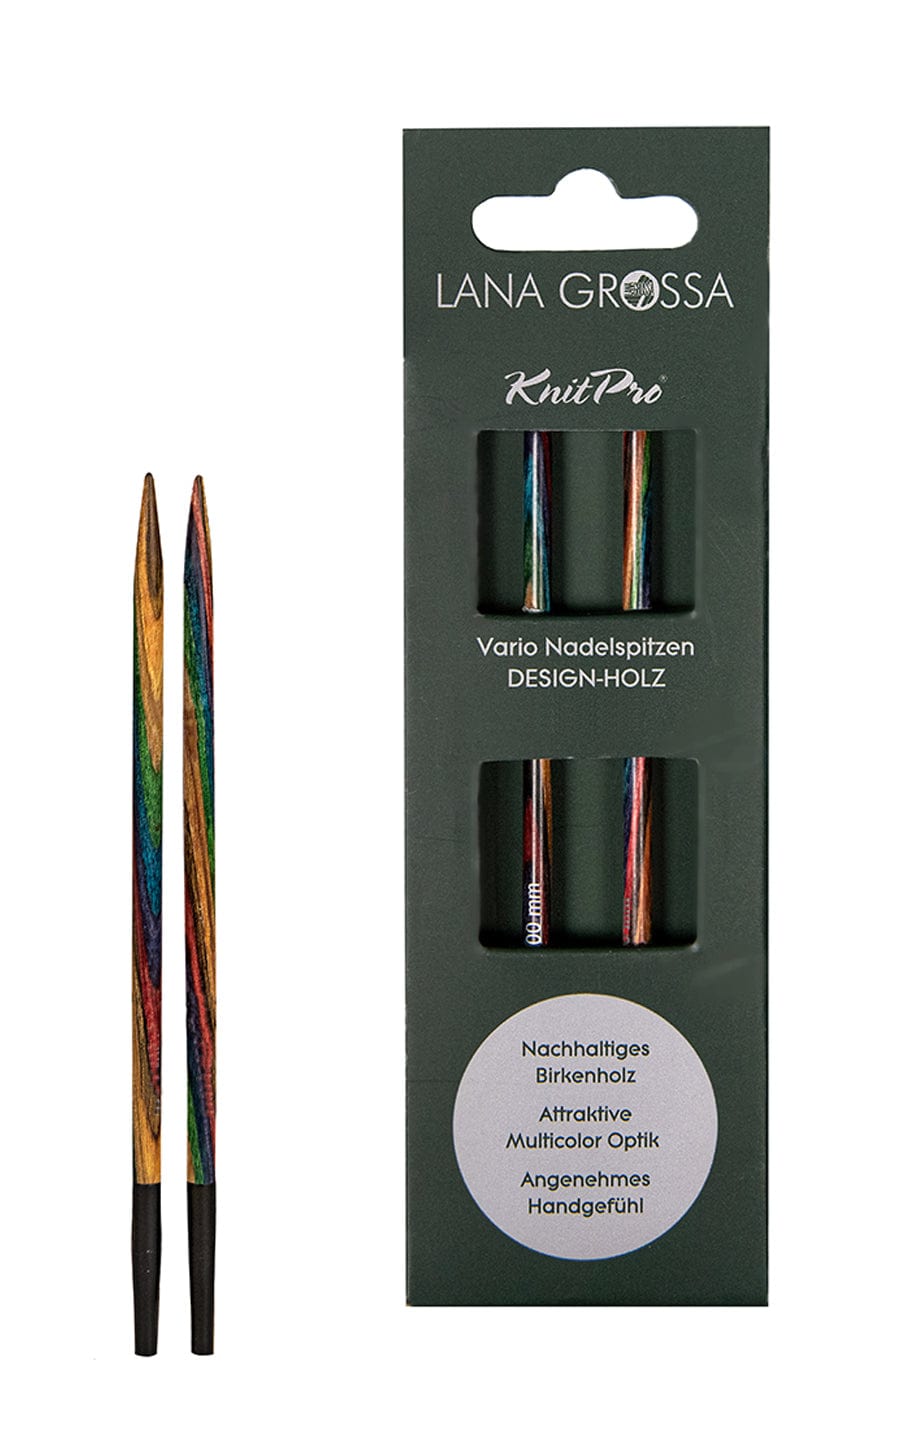 7,0 mm Nadelspitze Vario aus Holz - neue Verpackung von LANA GROSSA jetzt online kaufen bei OONIQUE